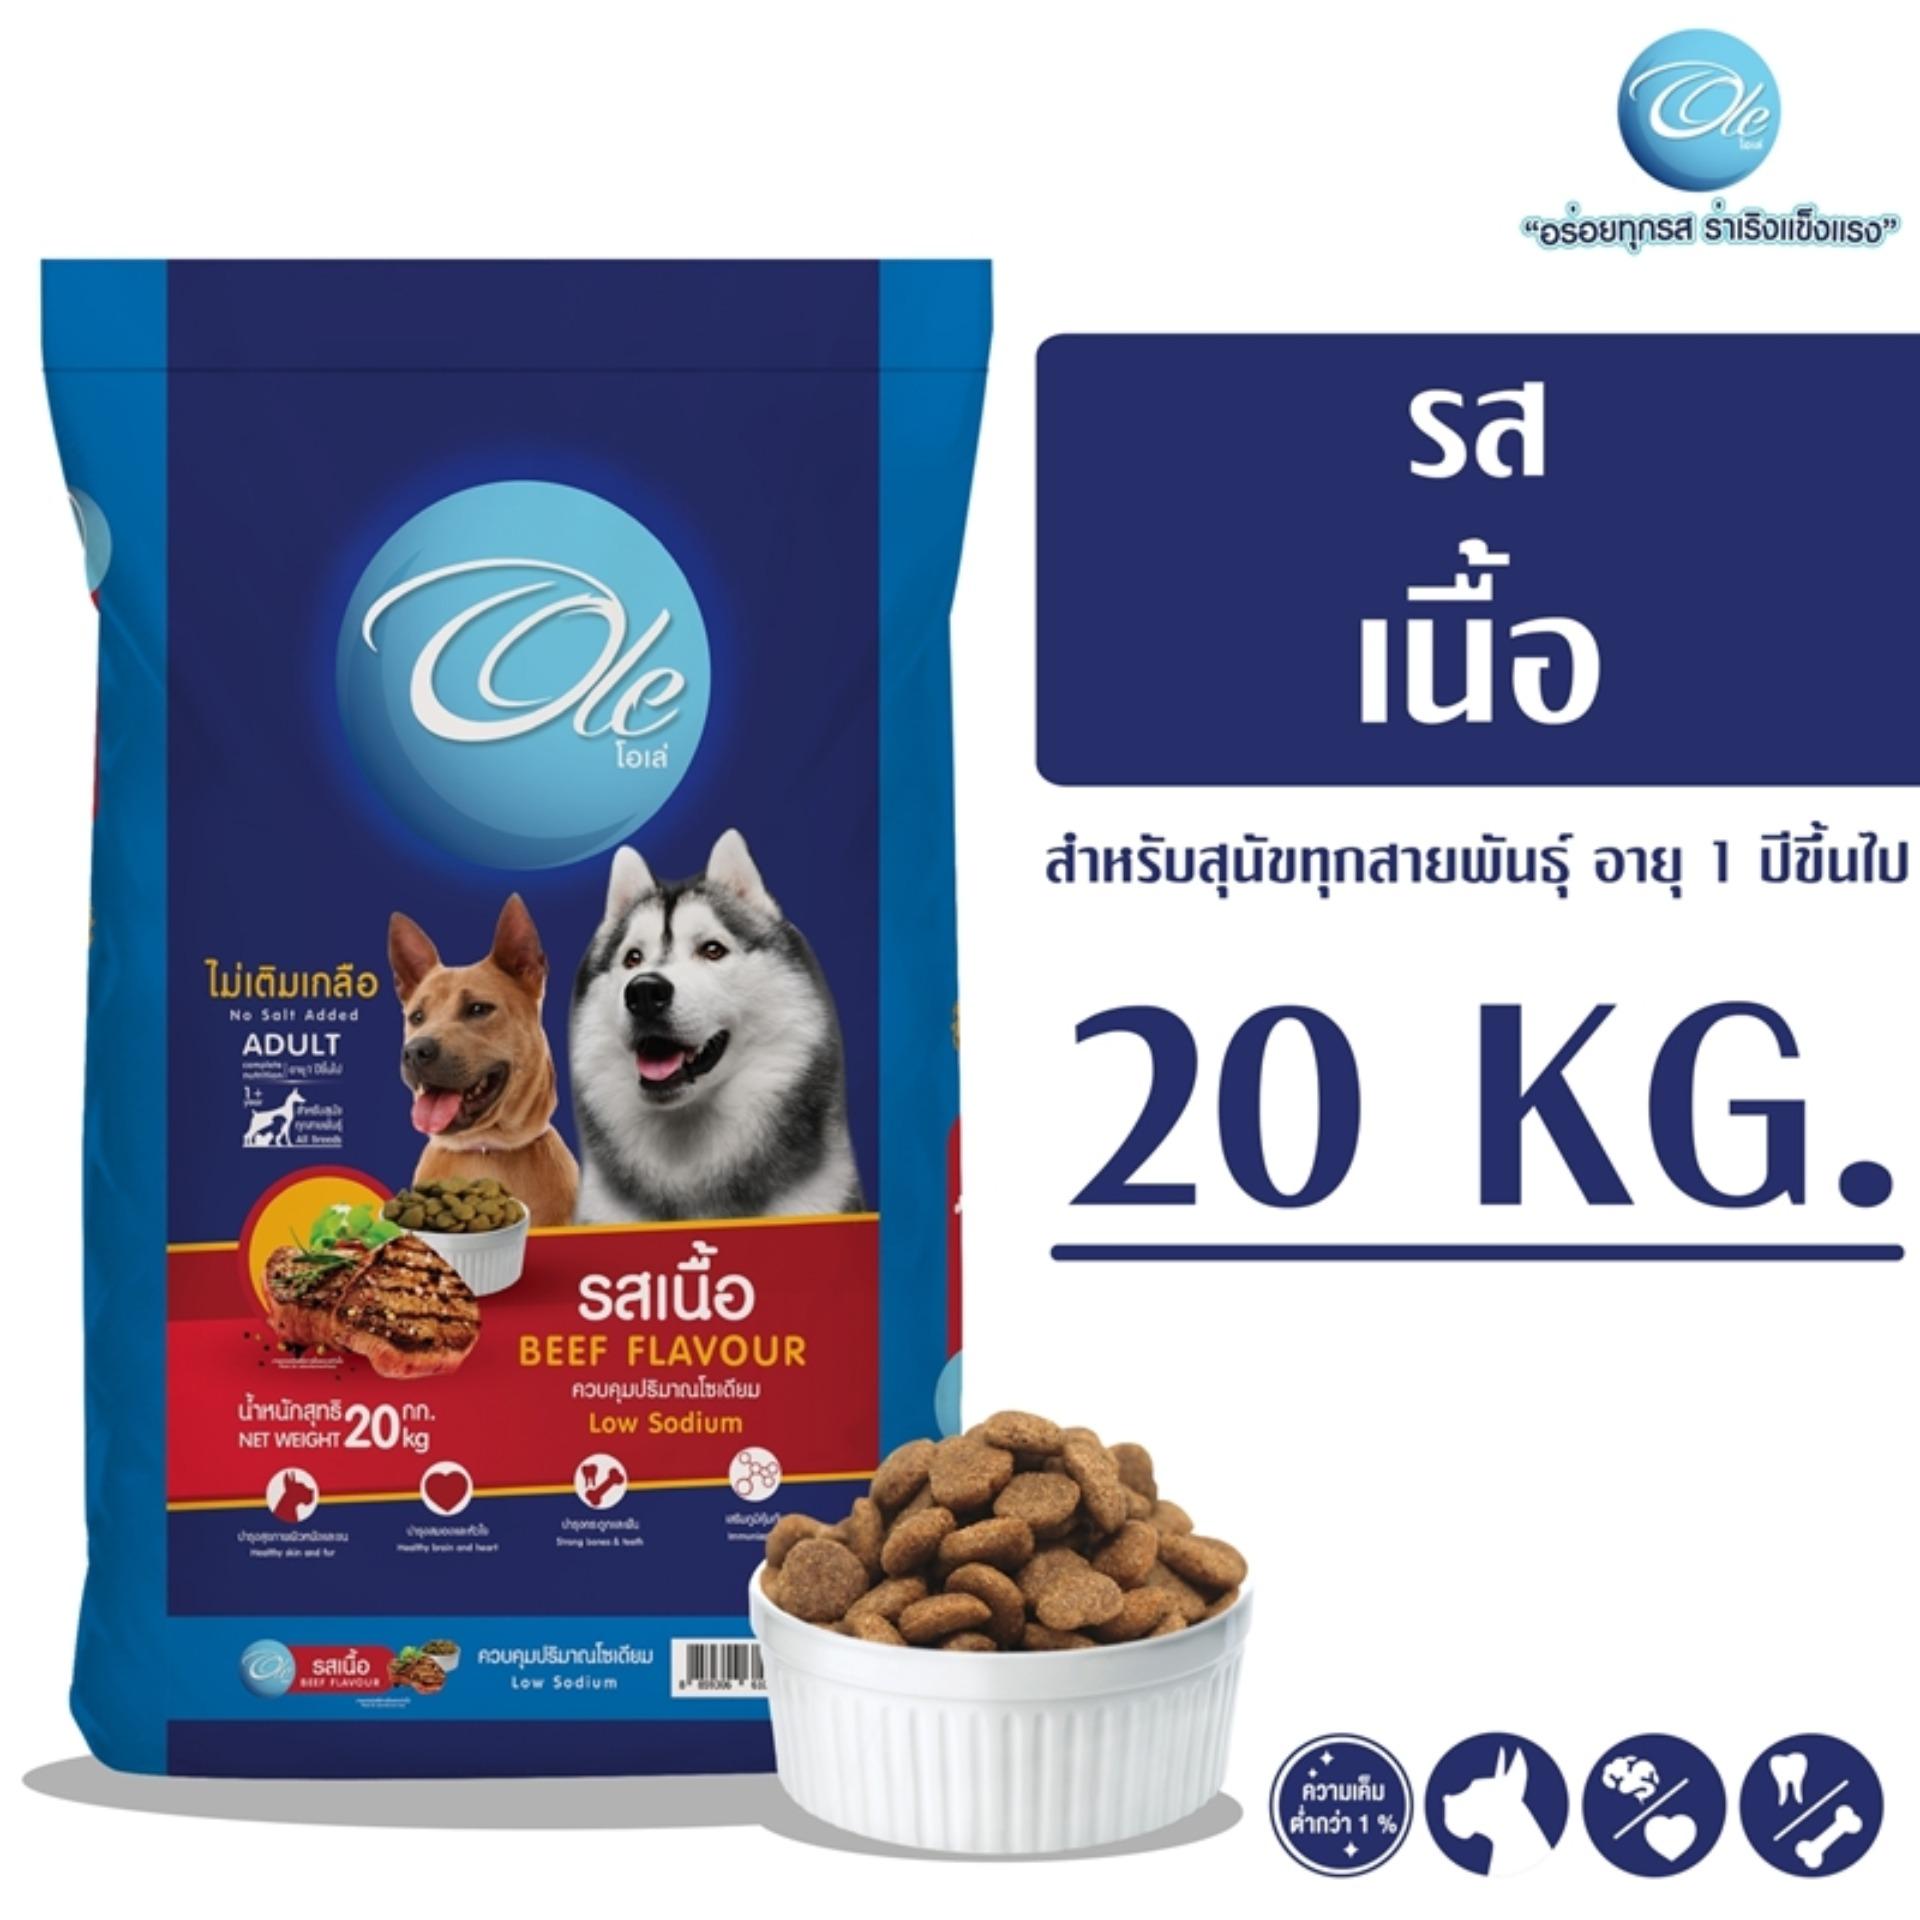 Ole (โอเล่) รสเนื้อ 1 สี อาหารเม็ดสำหรับสุนัข อายุ 1 ปีขึ้นไป ขนาด 20 KG